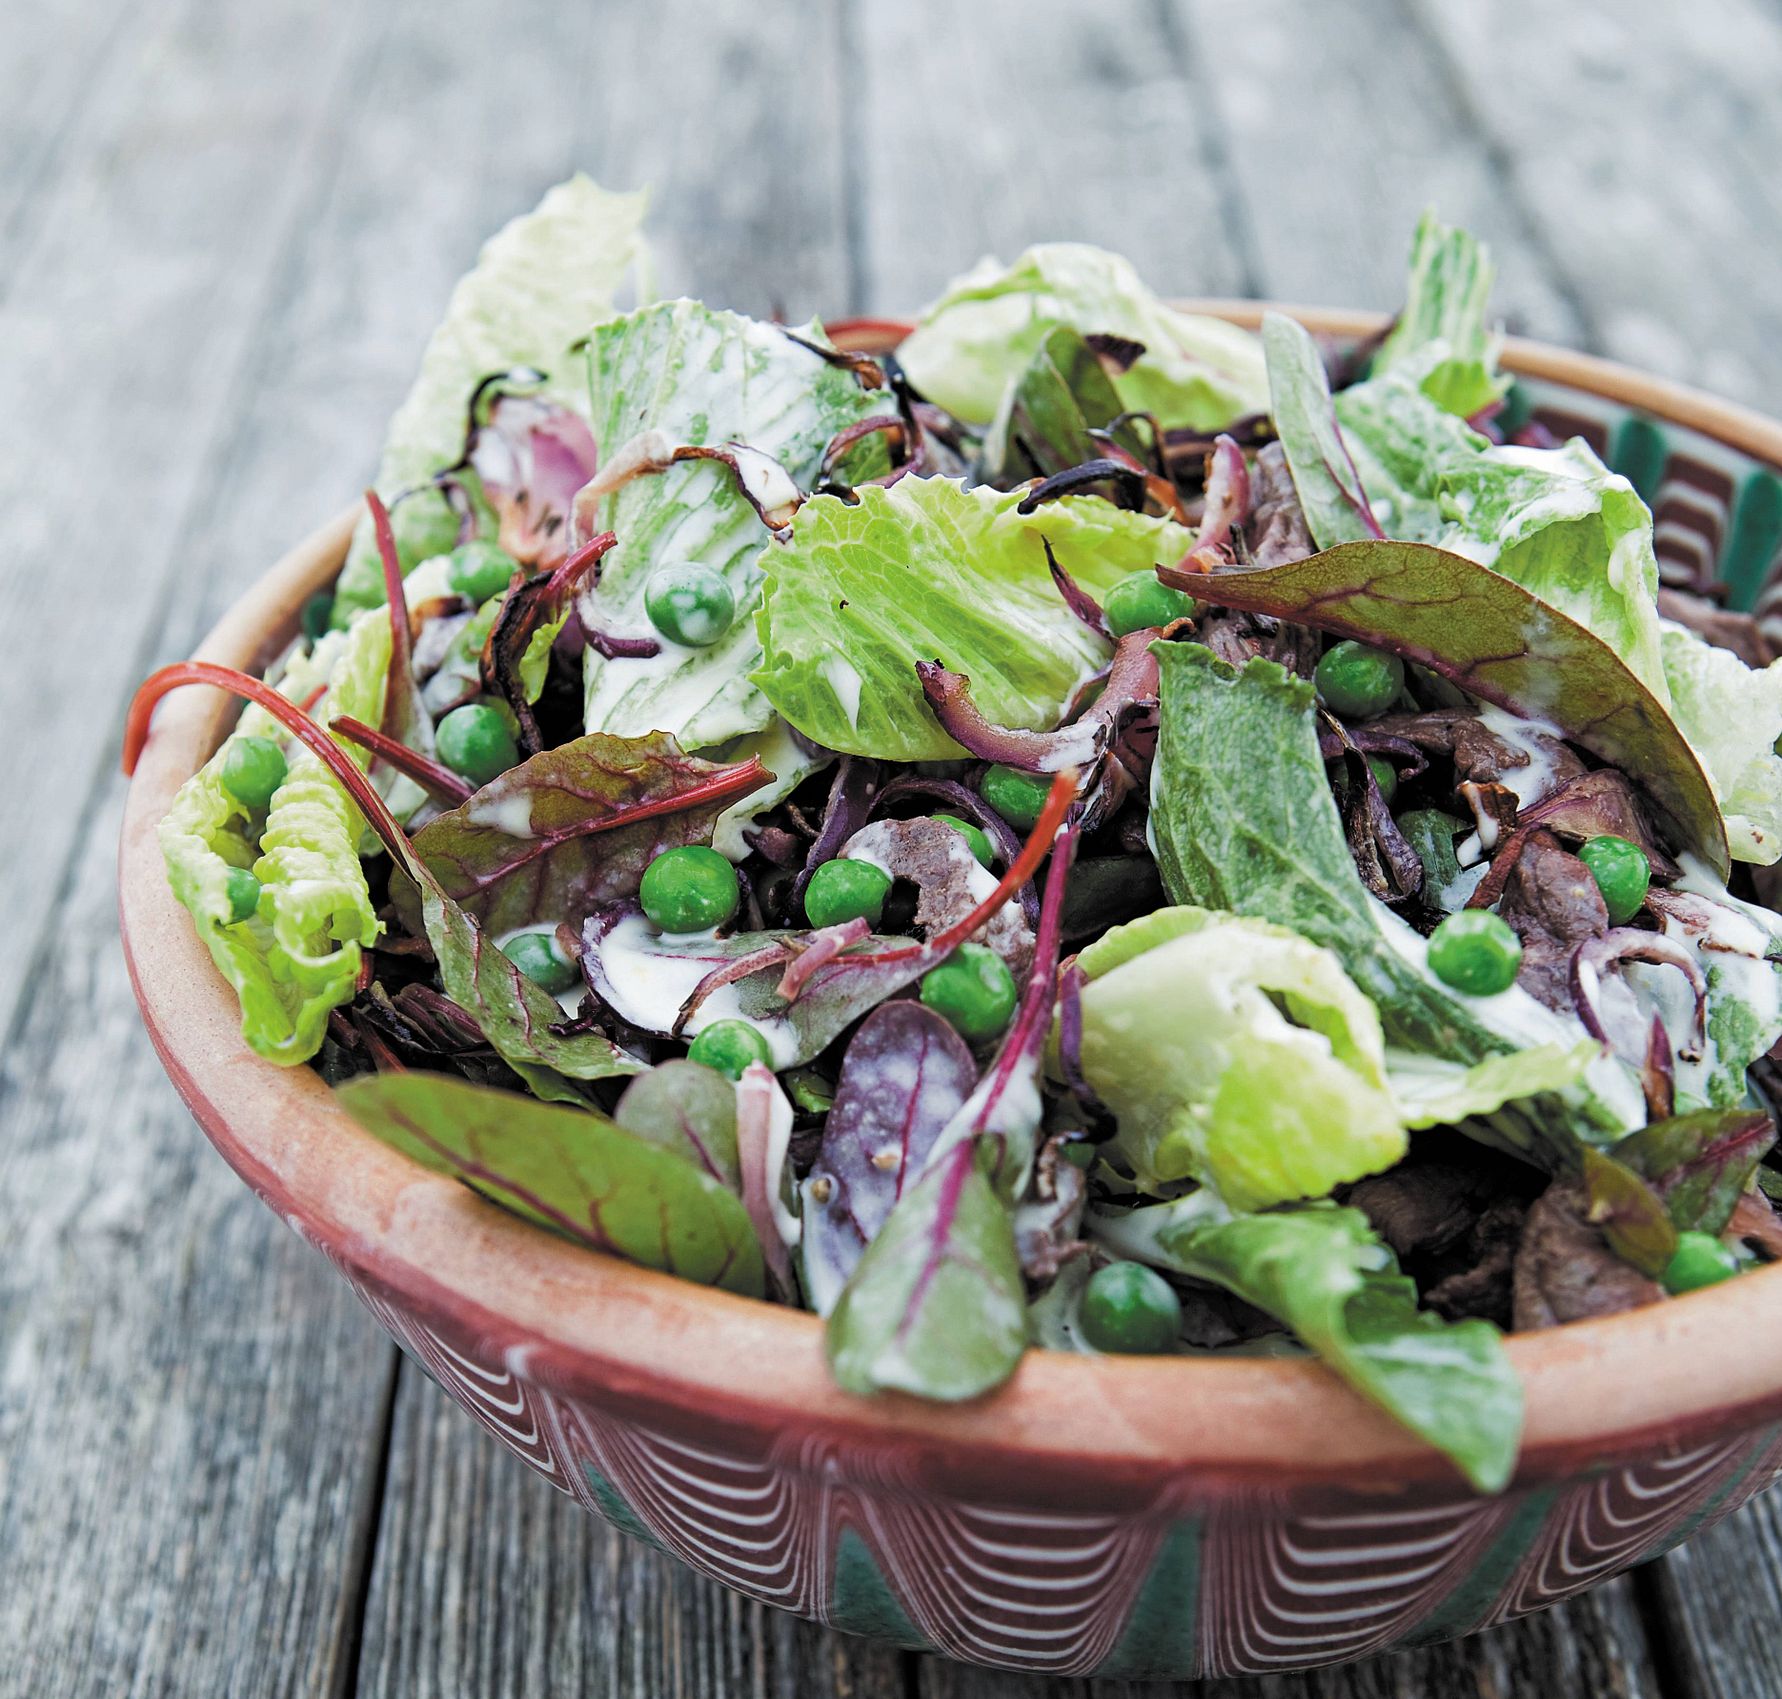 Tre ud af fire danskere vil spise mere grønt: Her er 6 tips til smagfulde vegetarretter